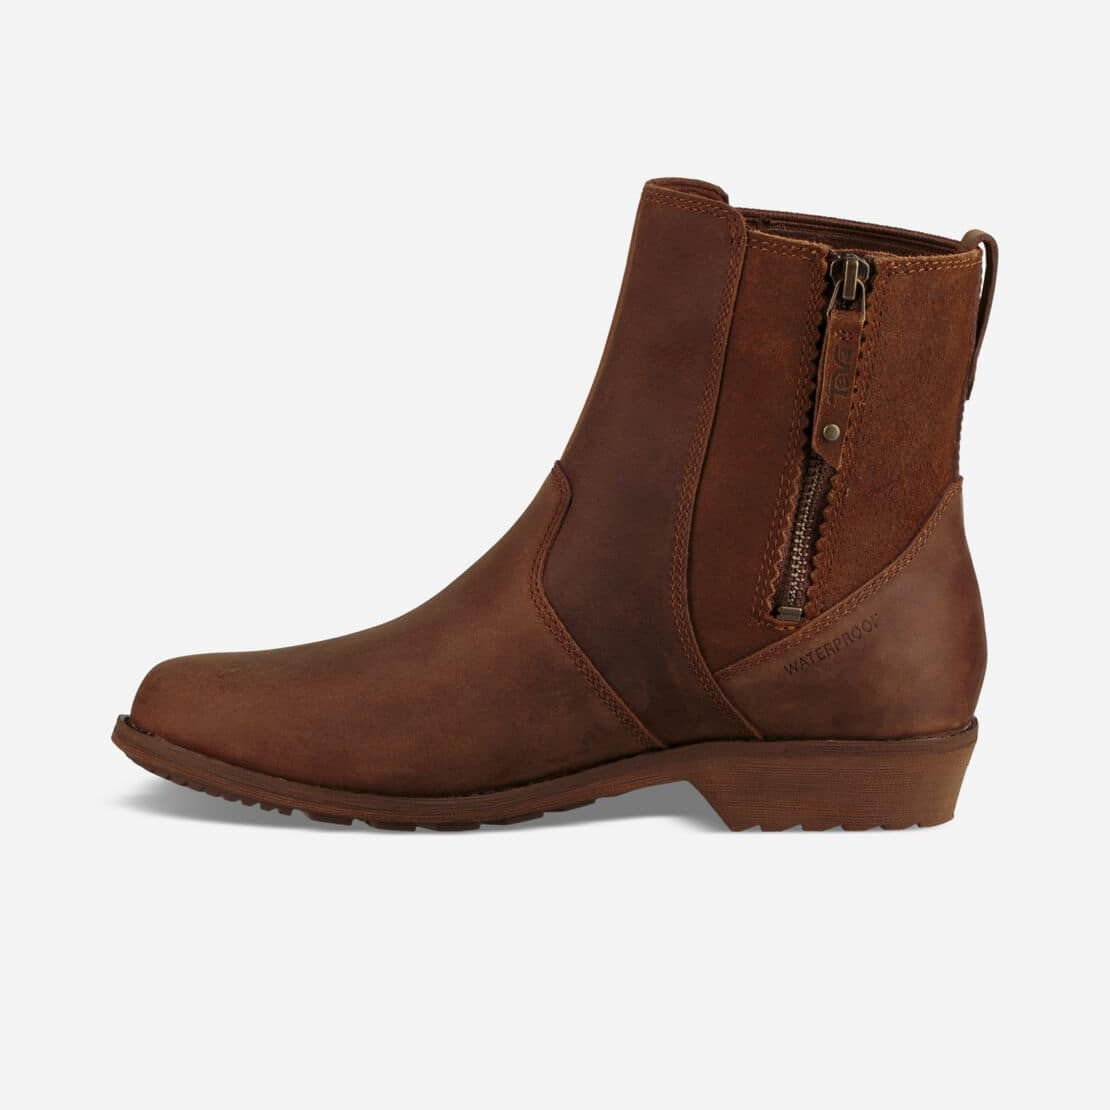 Teva Boots Outlet Store - Teva Ellery Ankle Waterproof Dark Brown Boots ...